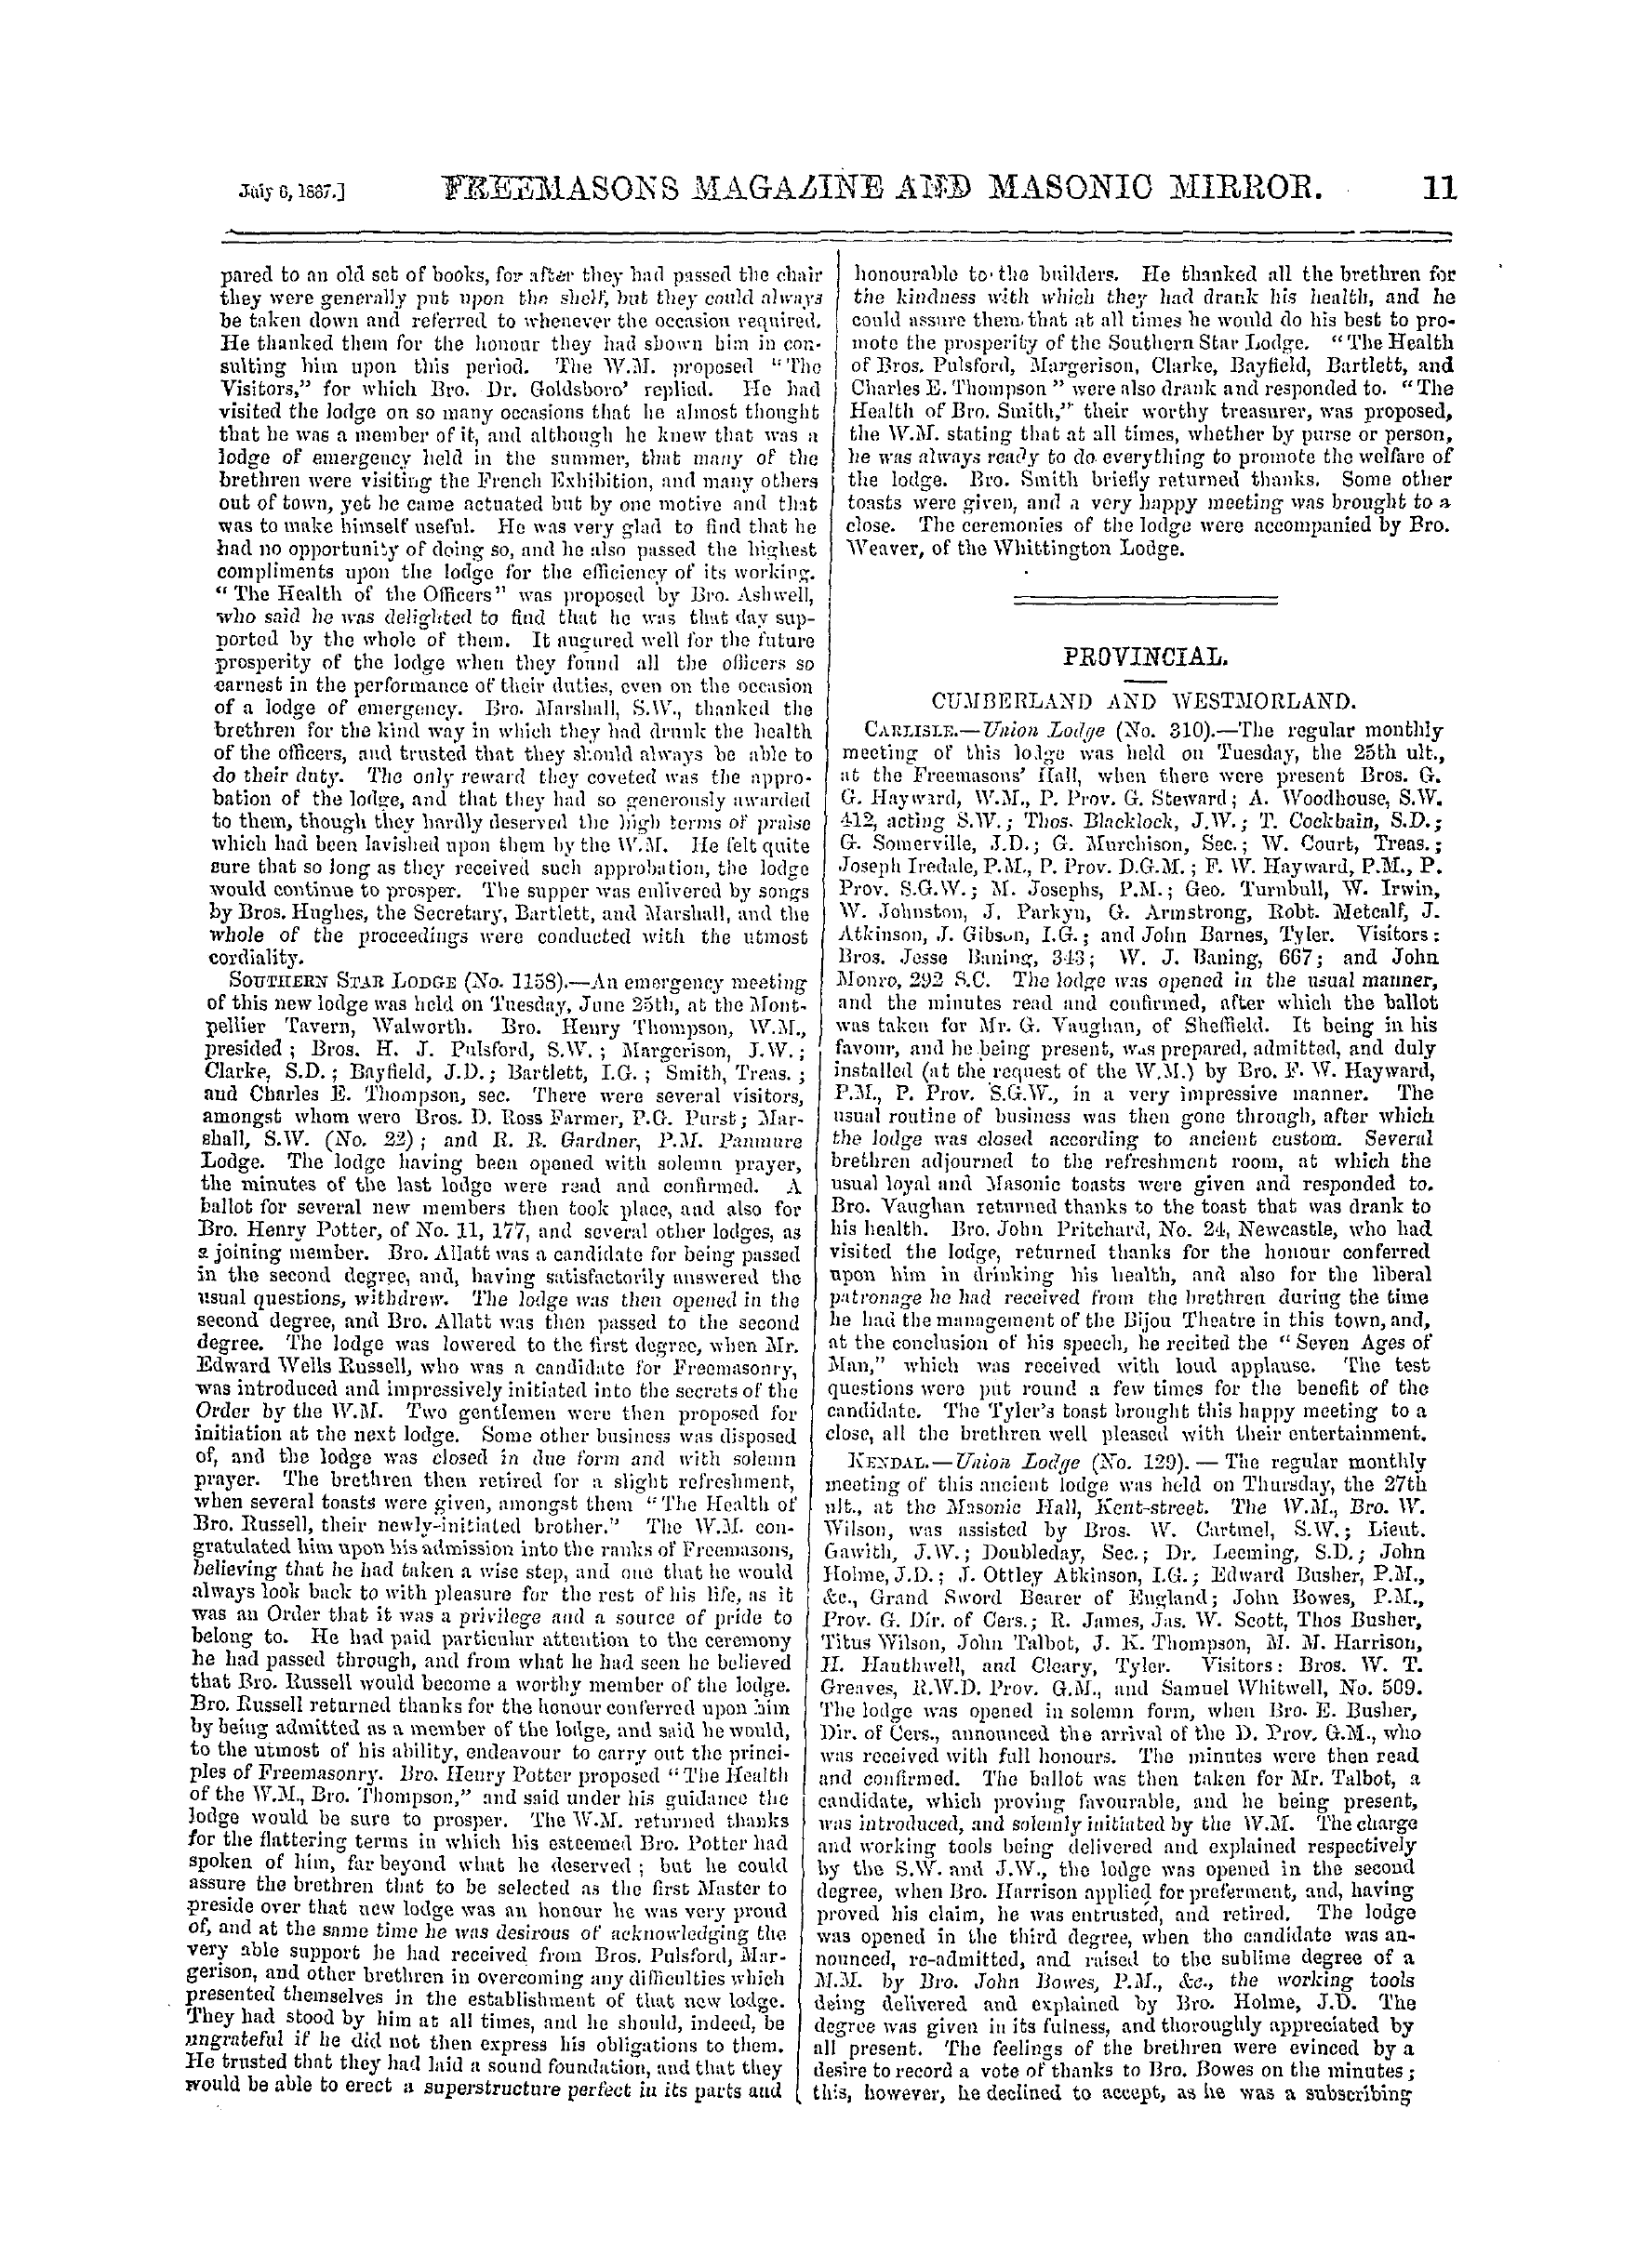 The Freemasons' Monthly Magazine: 1867-07-06: 19